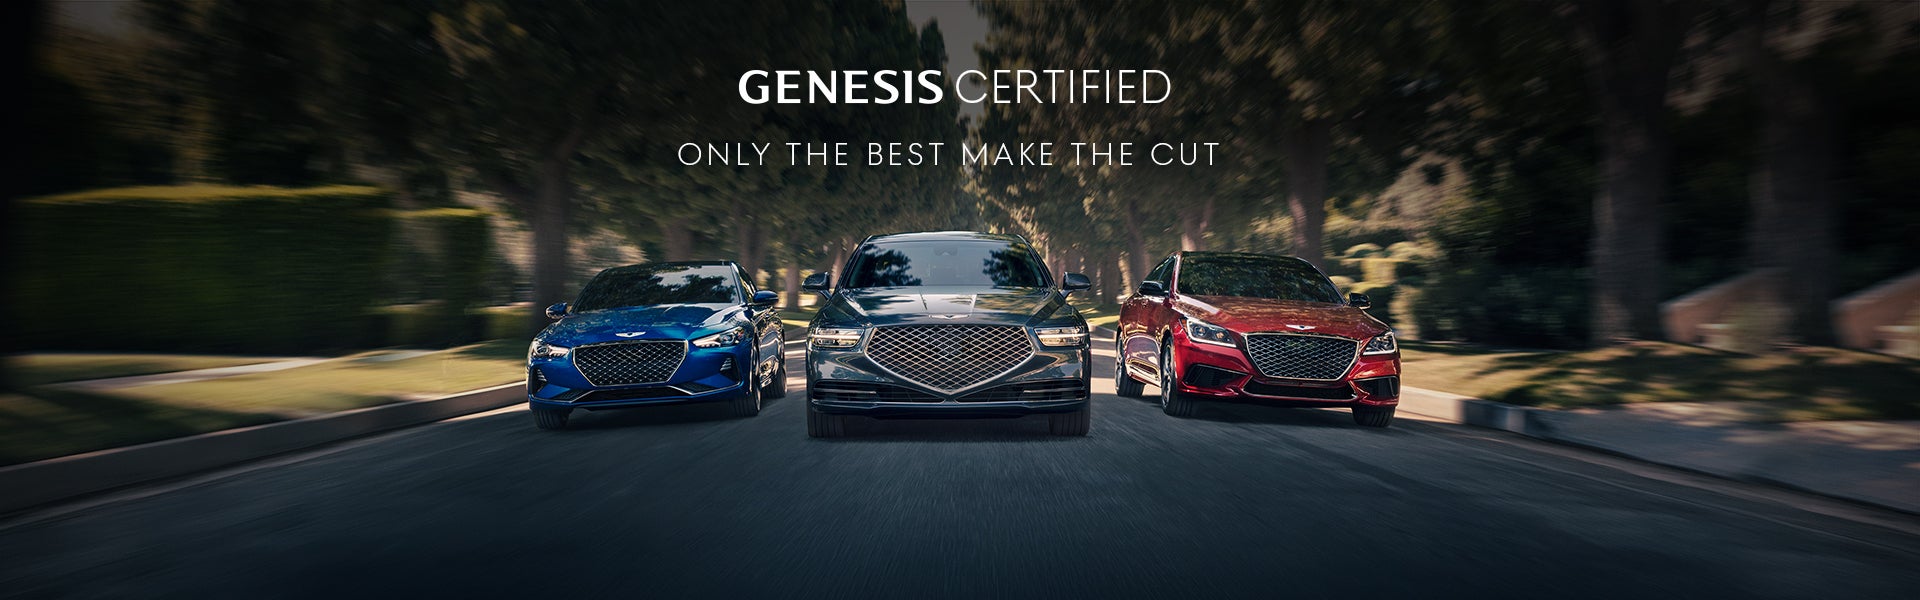 Genesis Certified Vehicles